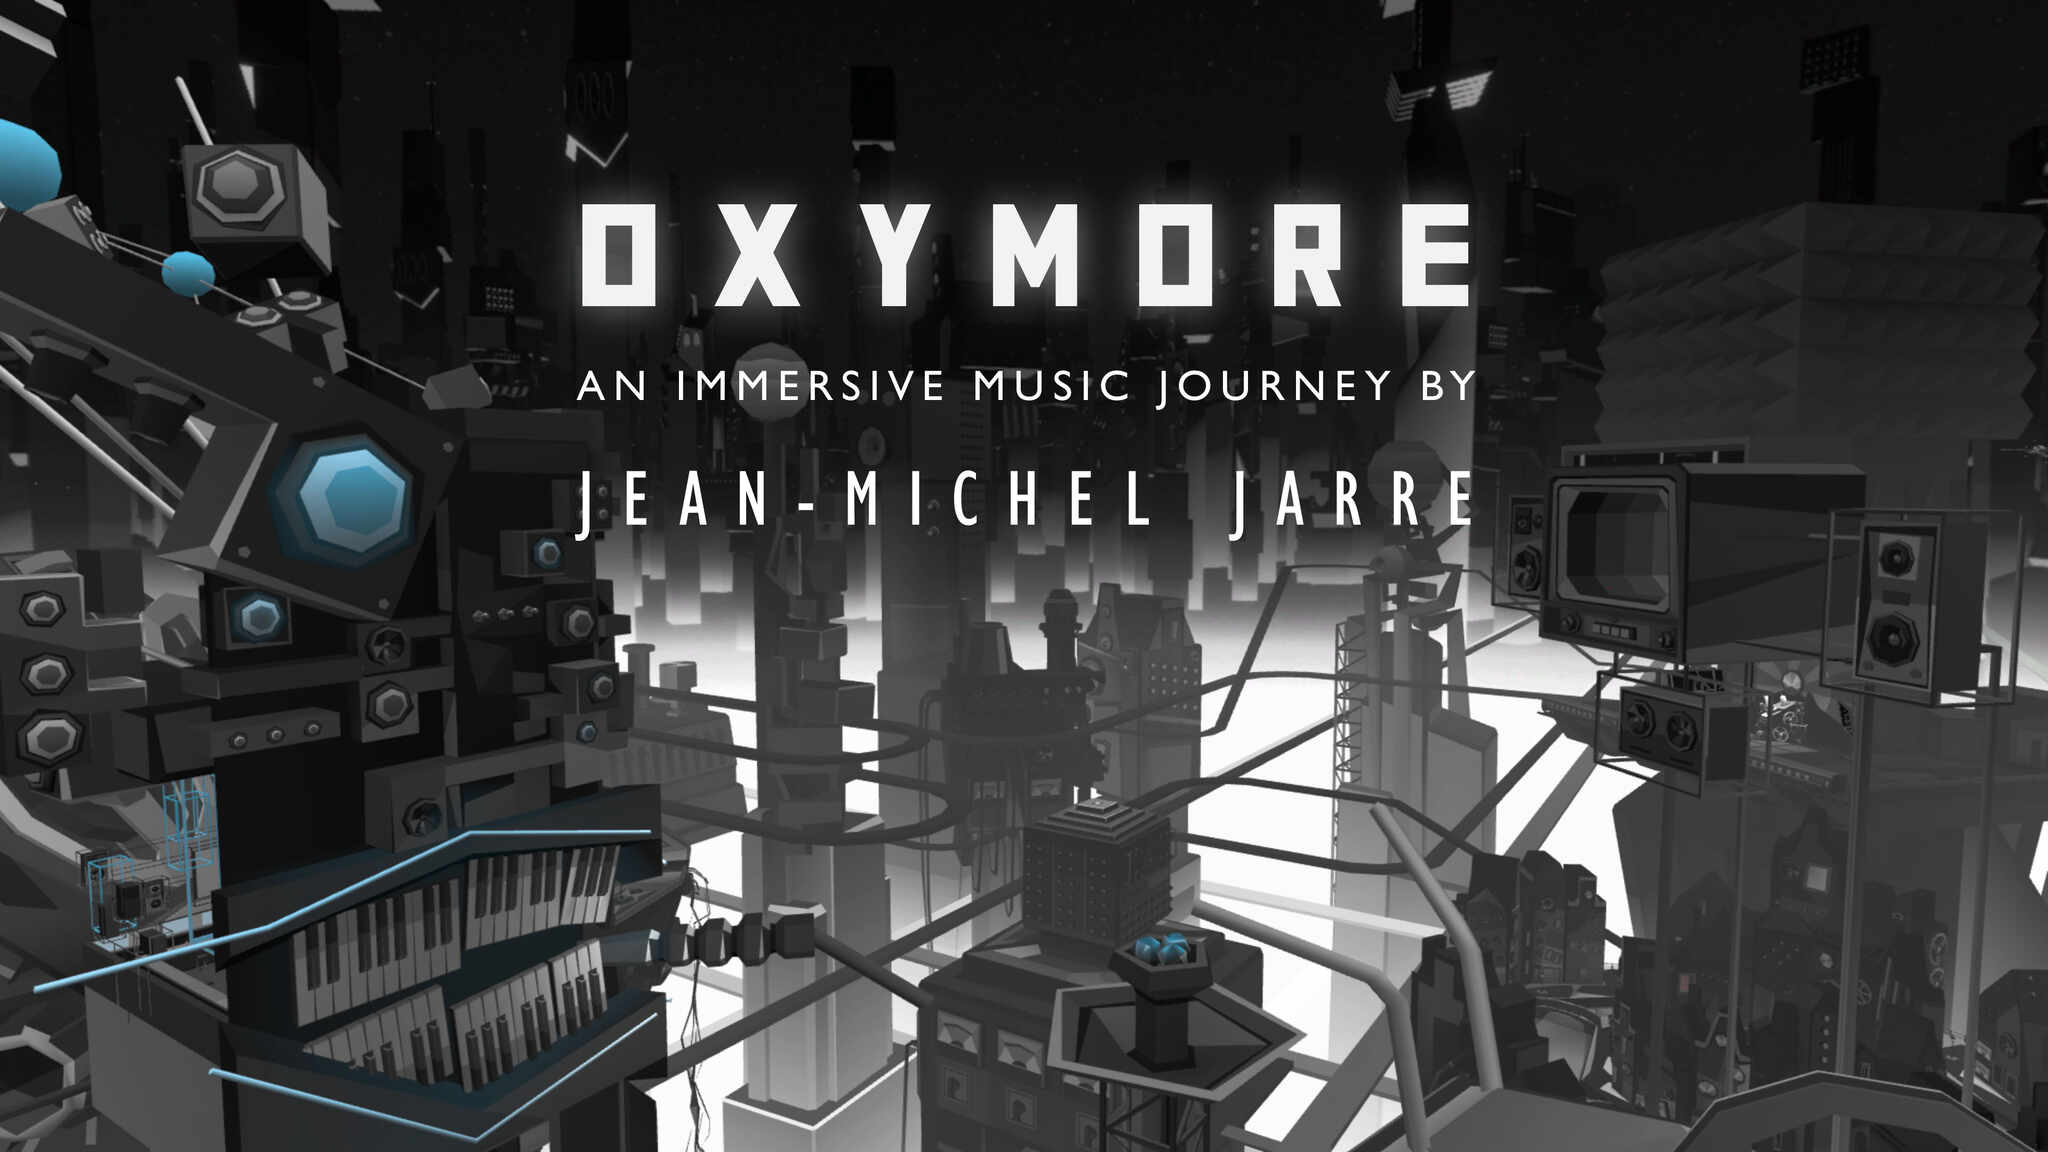 OXYMORE by Jean-Michel Jarre